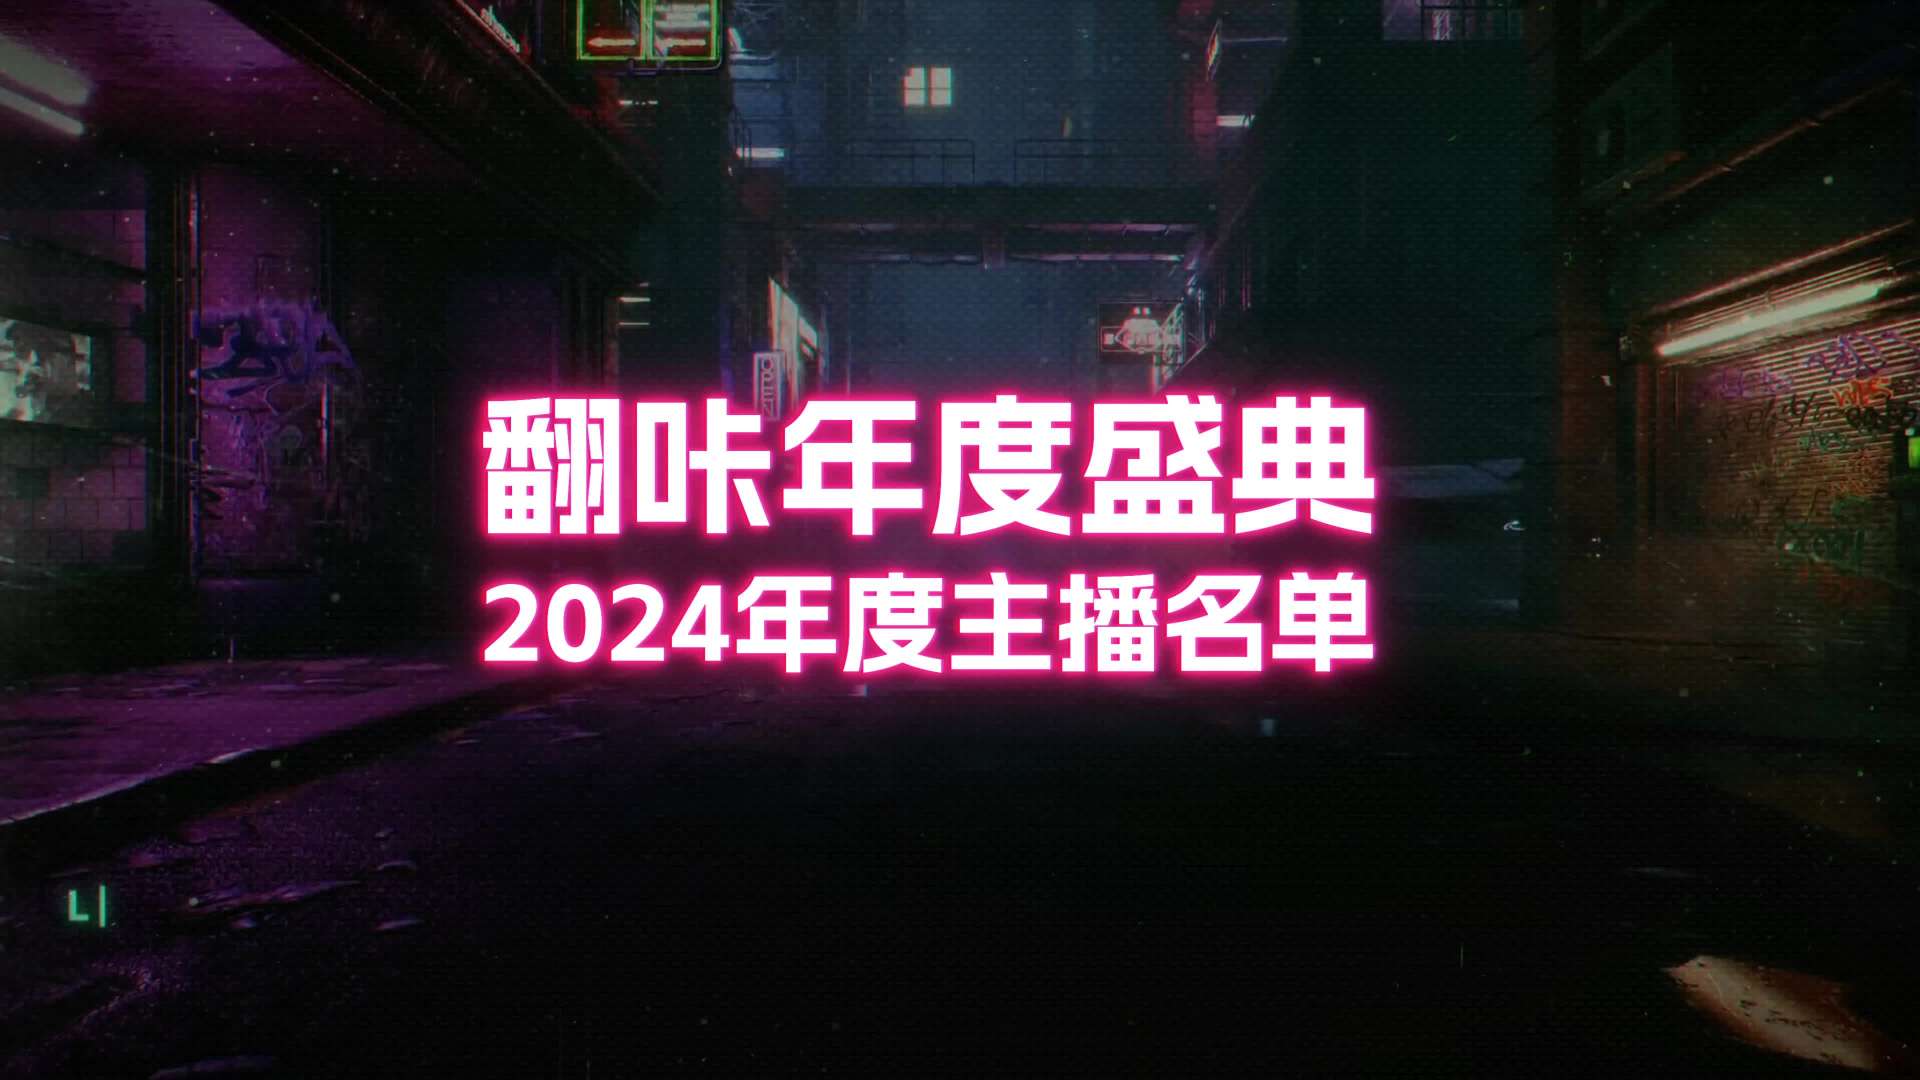 2024翻咔年度盛典开场视频